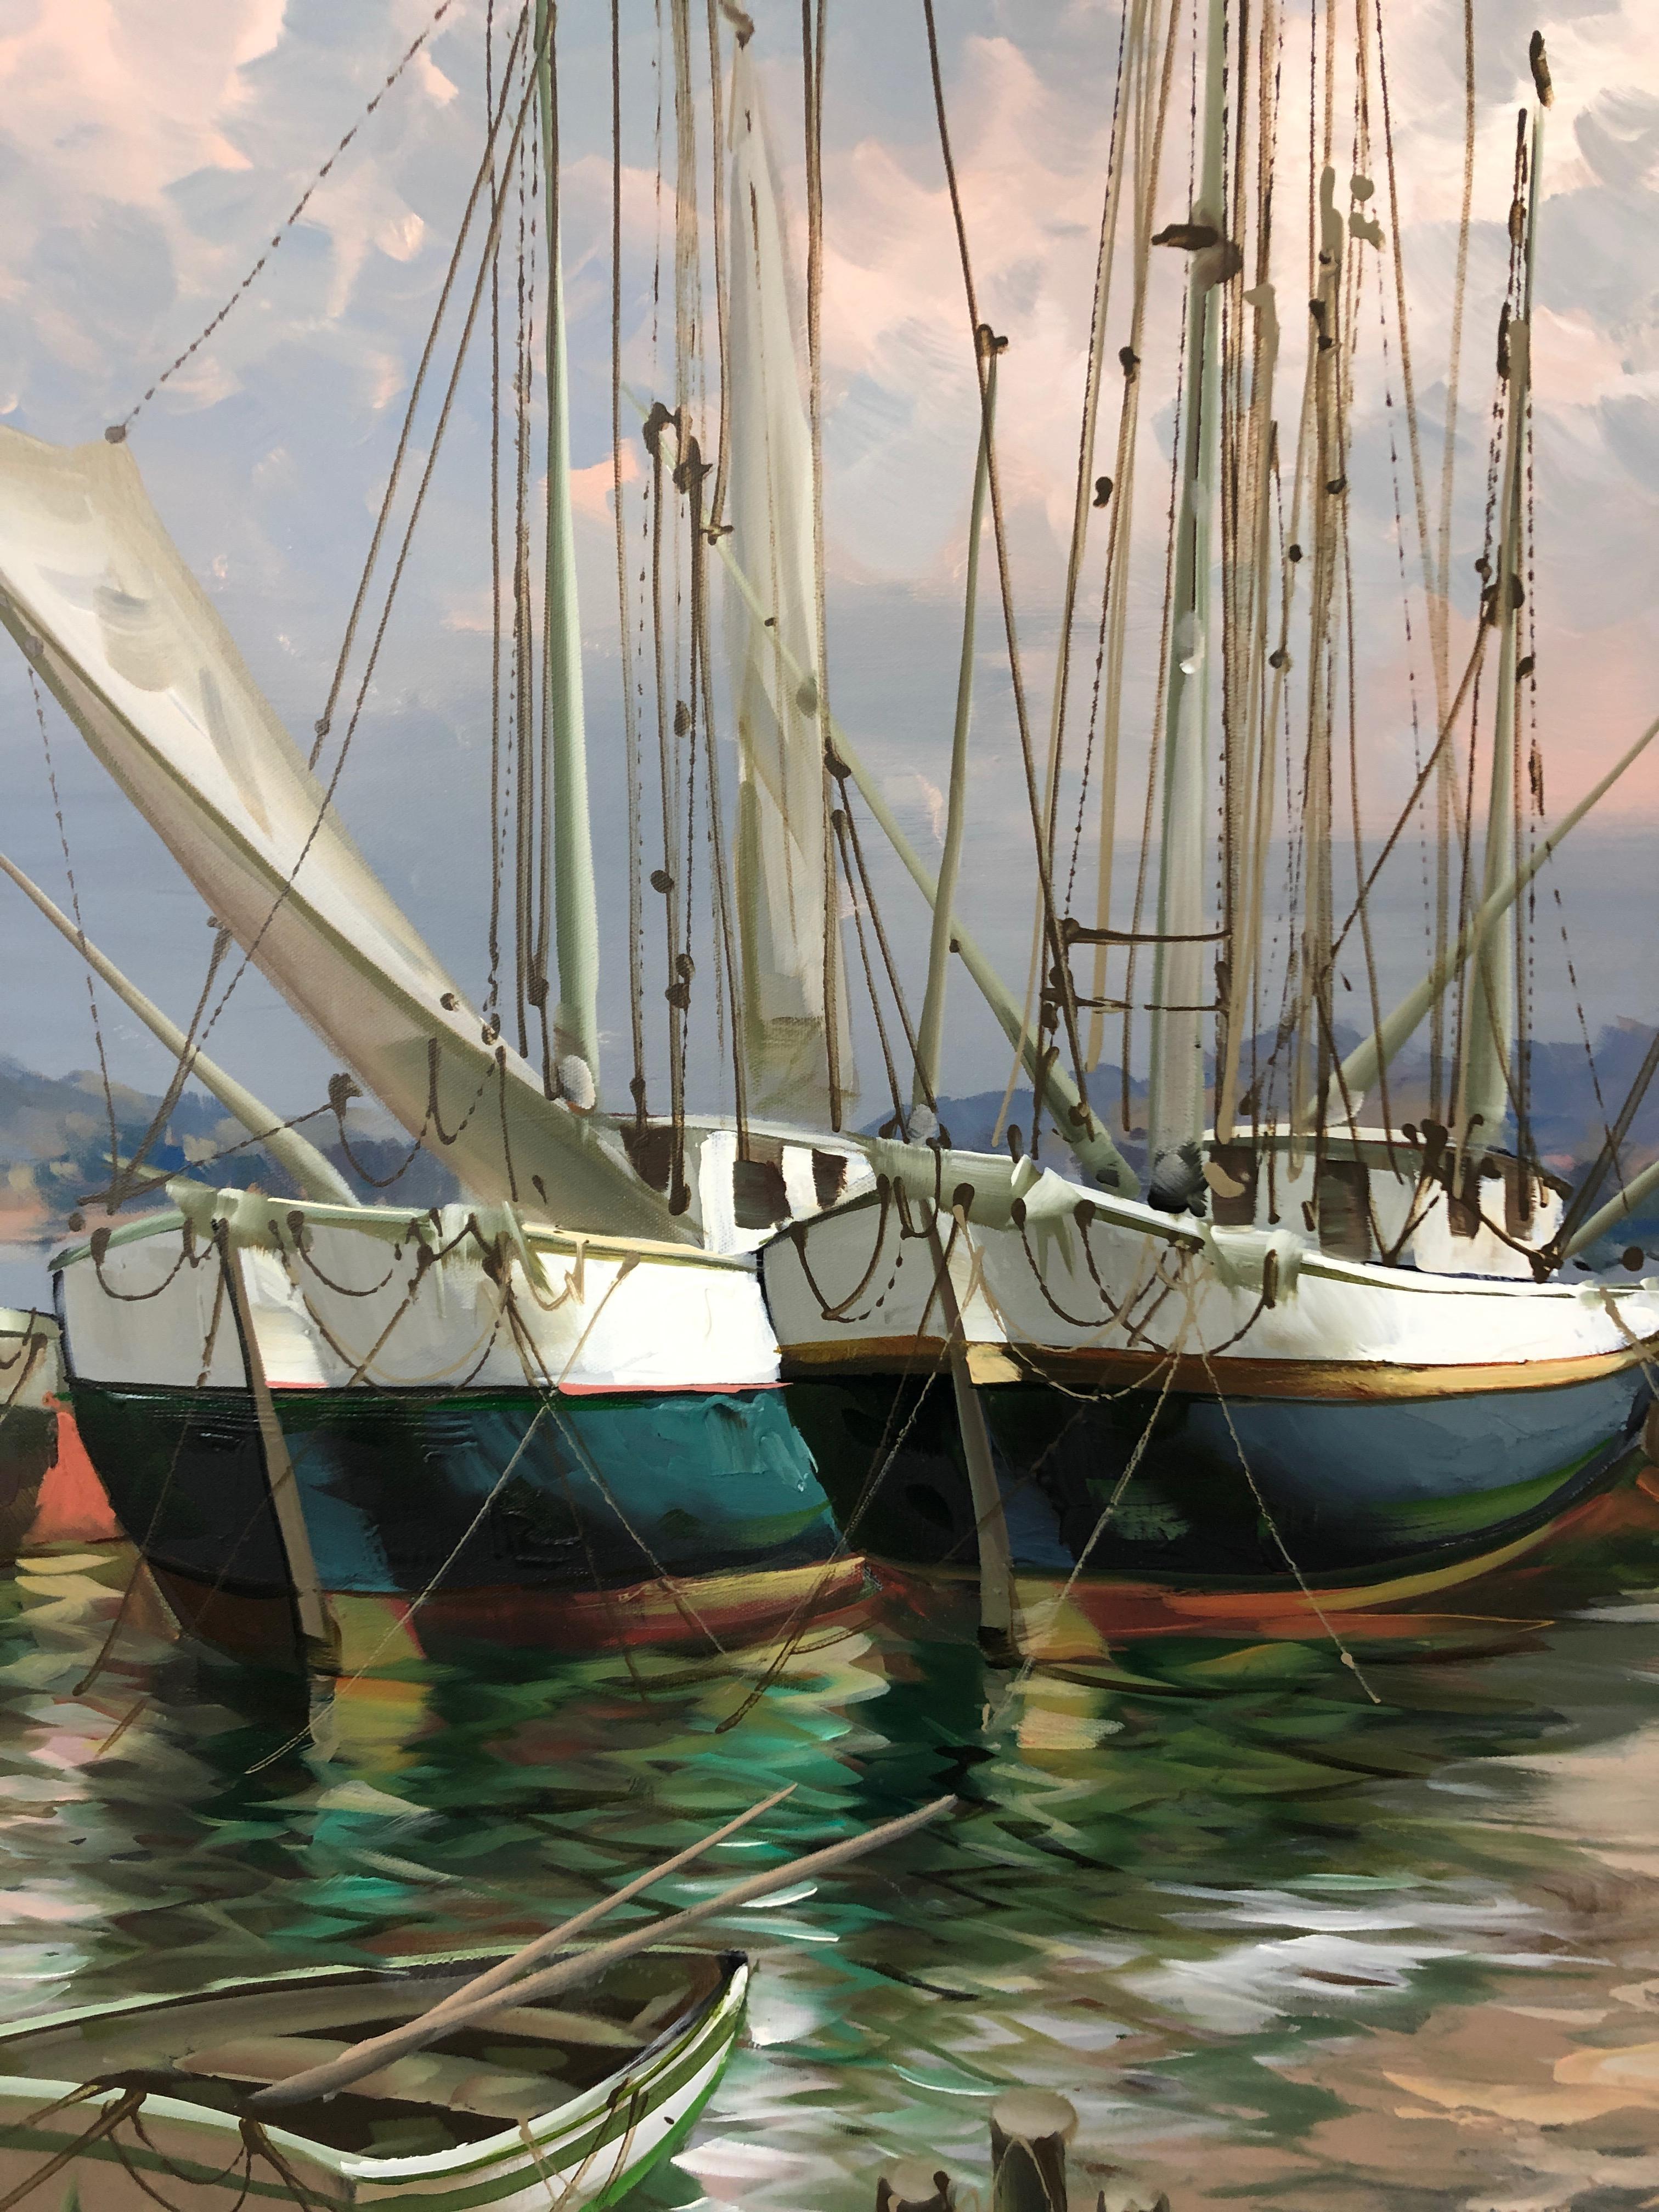 Une grande peinture sur toile très impressionnante, au rendu puissant, représentant des bateaux amarrés dans un port. Des coups de pinceau habiles de vert, de bleu, de rose et de blanc rendent l'eau palpable, tandis que le grand ciel au-dessus est